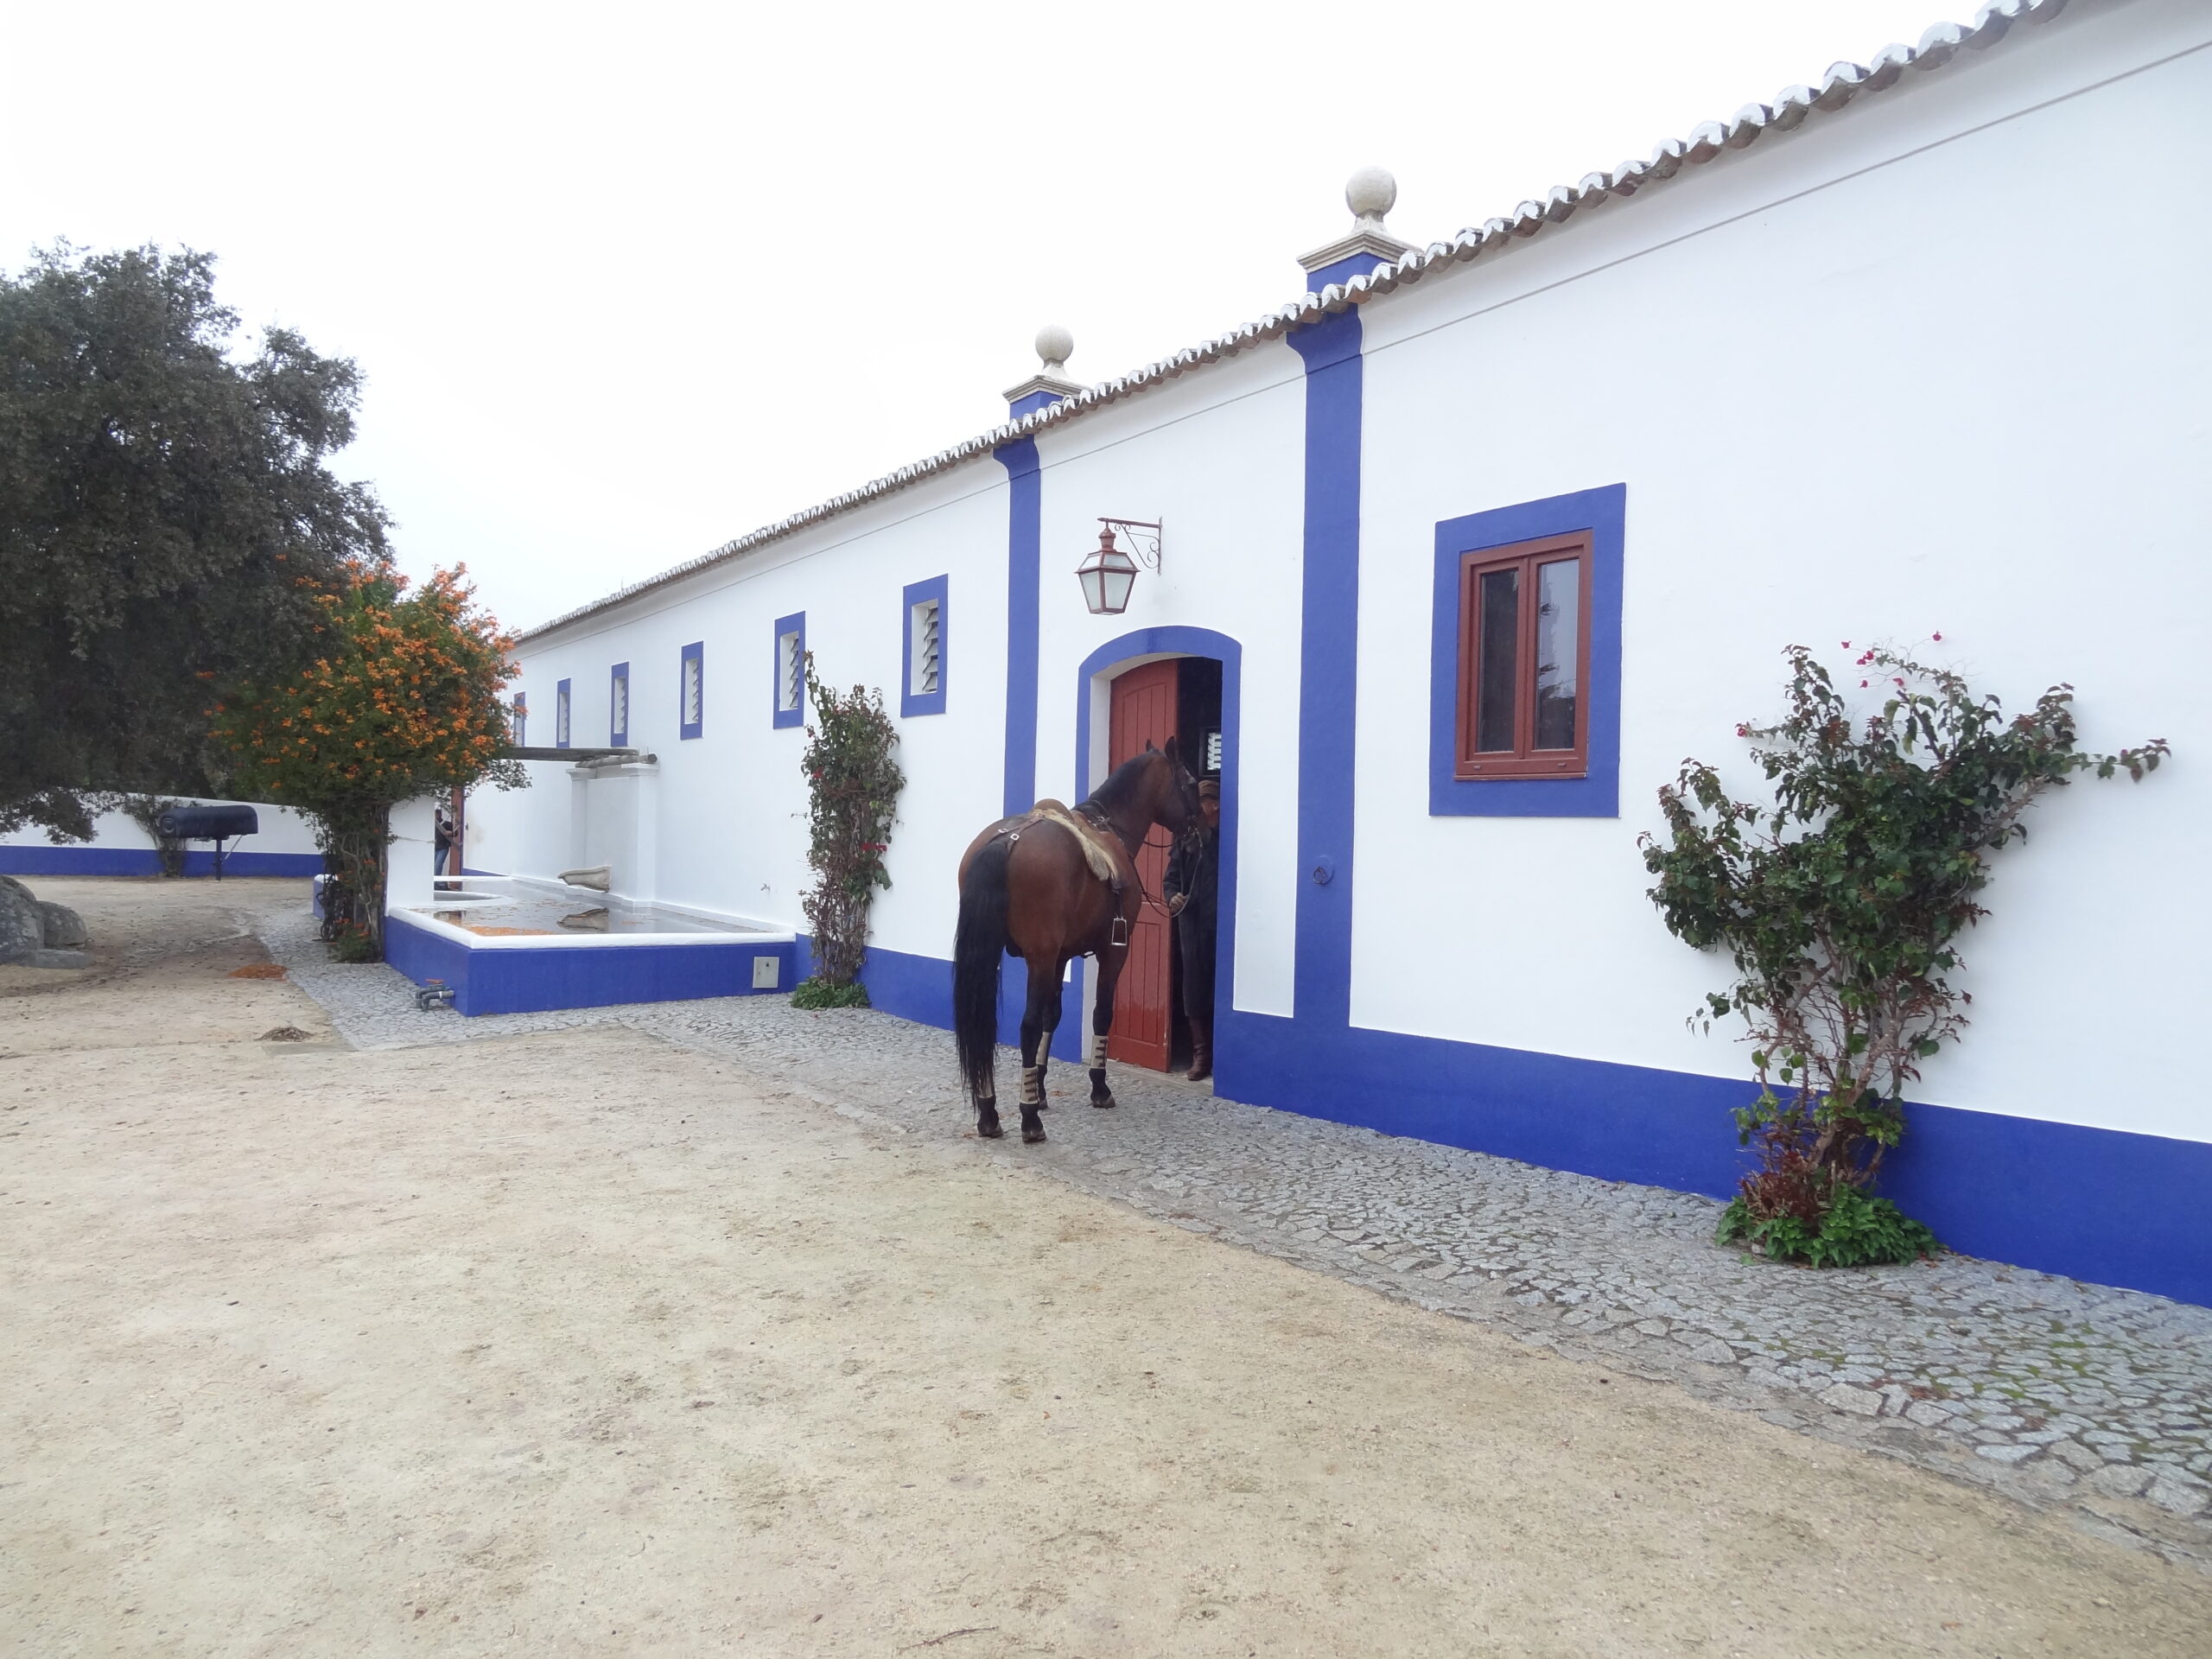 Dressuurstage in Monte Velho / Portugal - Vakantie te paard / Reisbureau Perlan